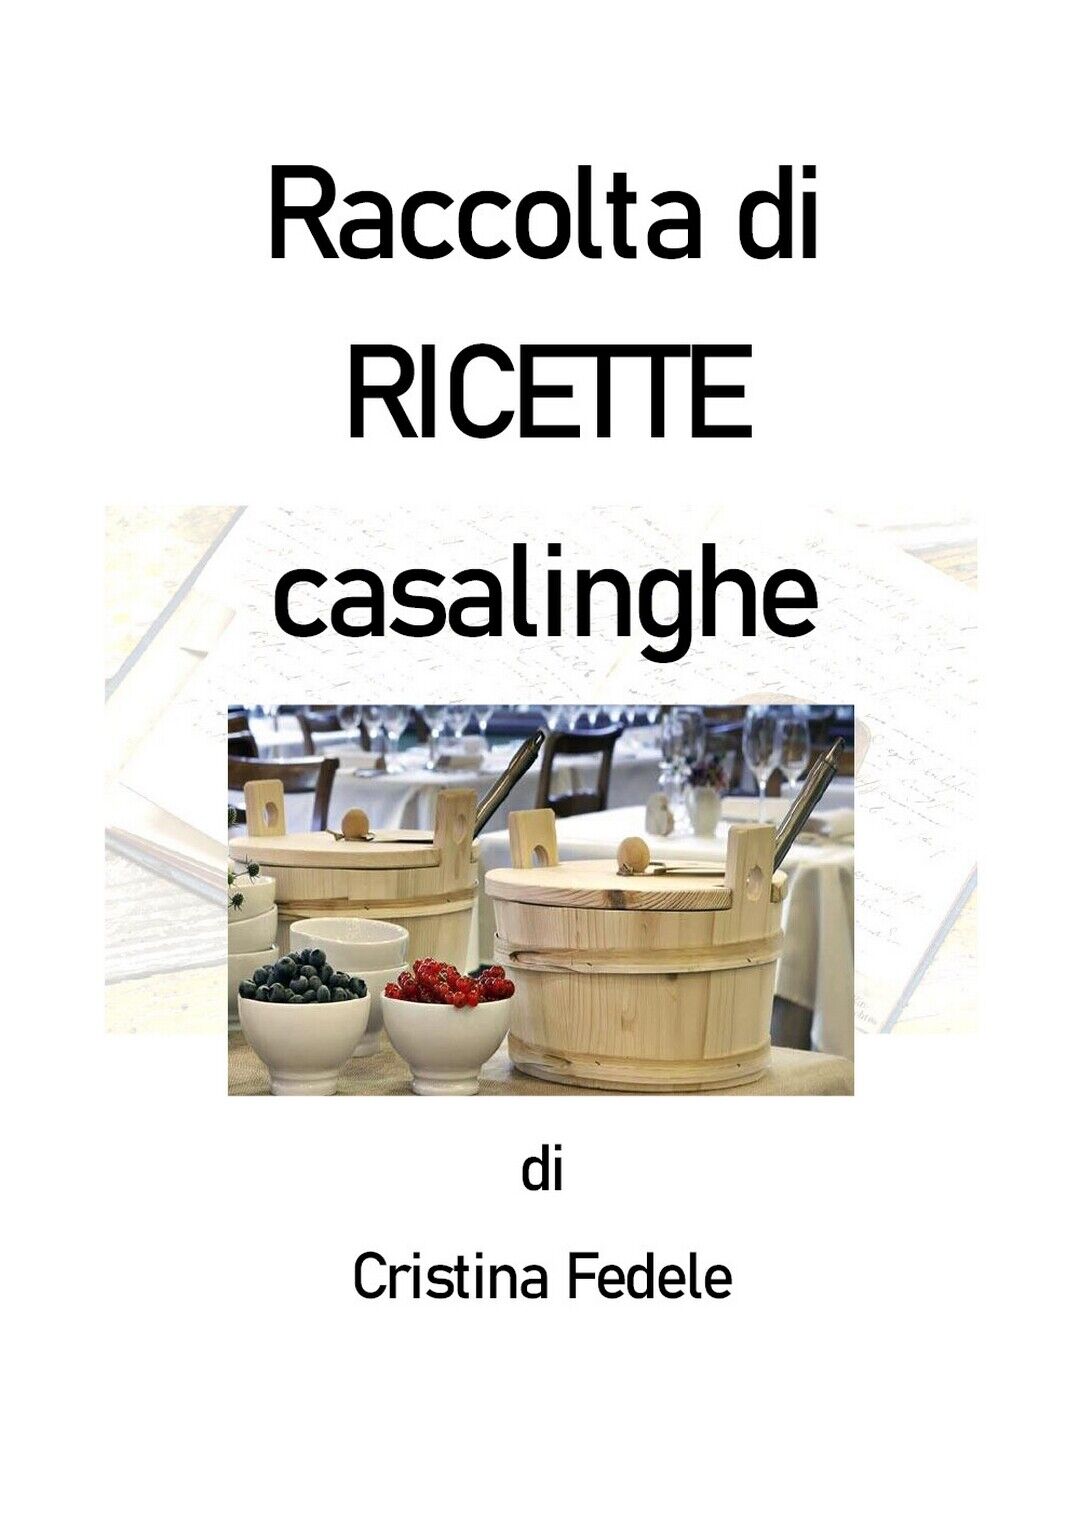 Raccolta di ricette casalinghe  di Cristina Fedele,  2020,  Youcanprint